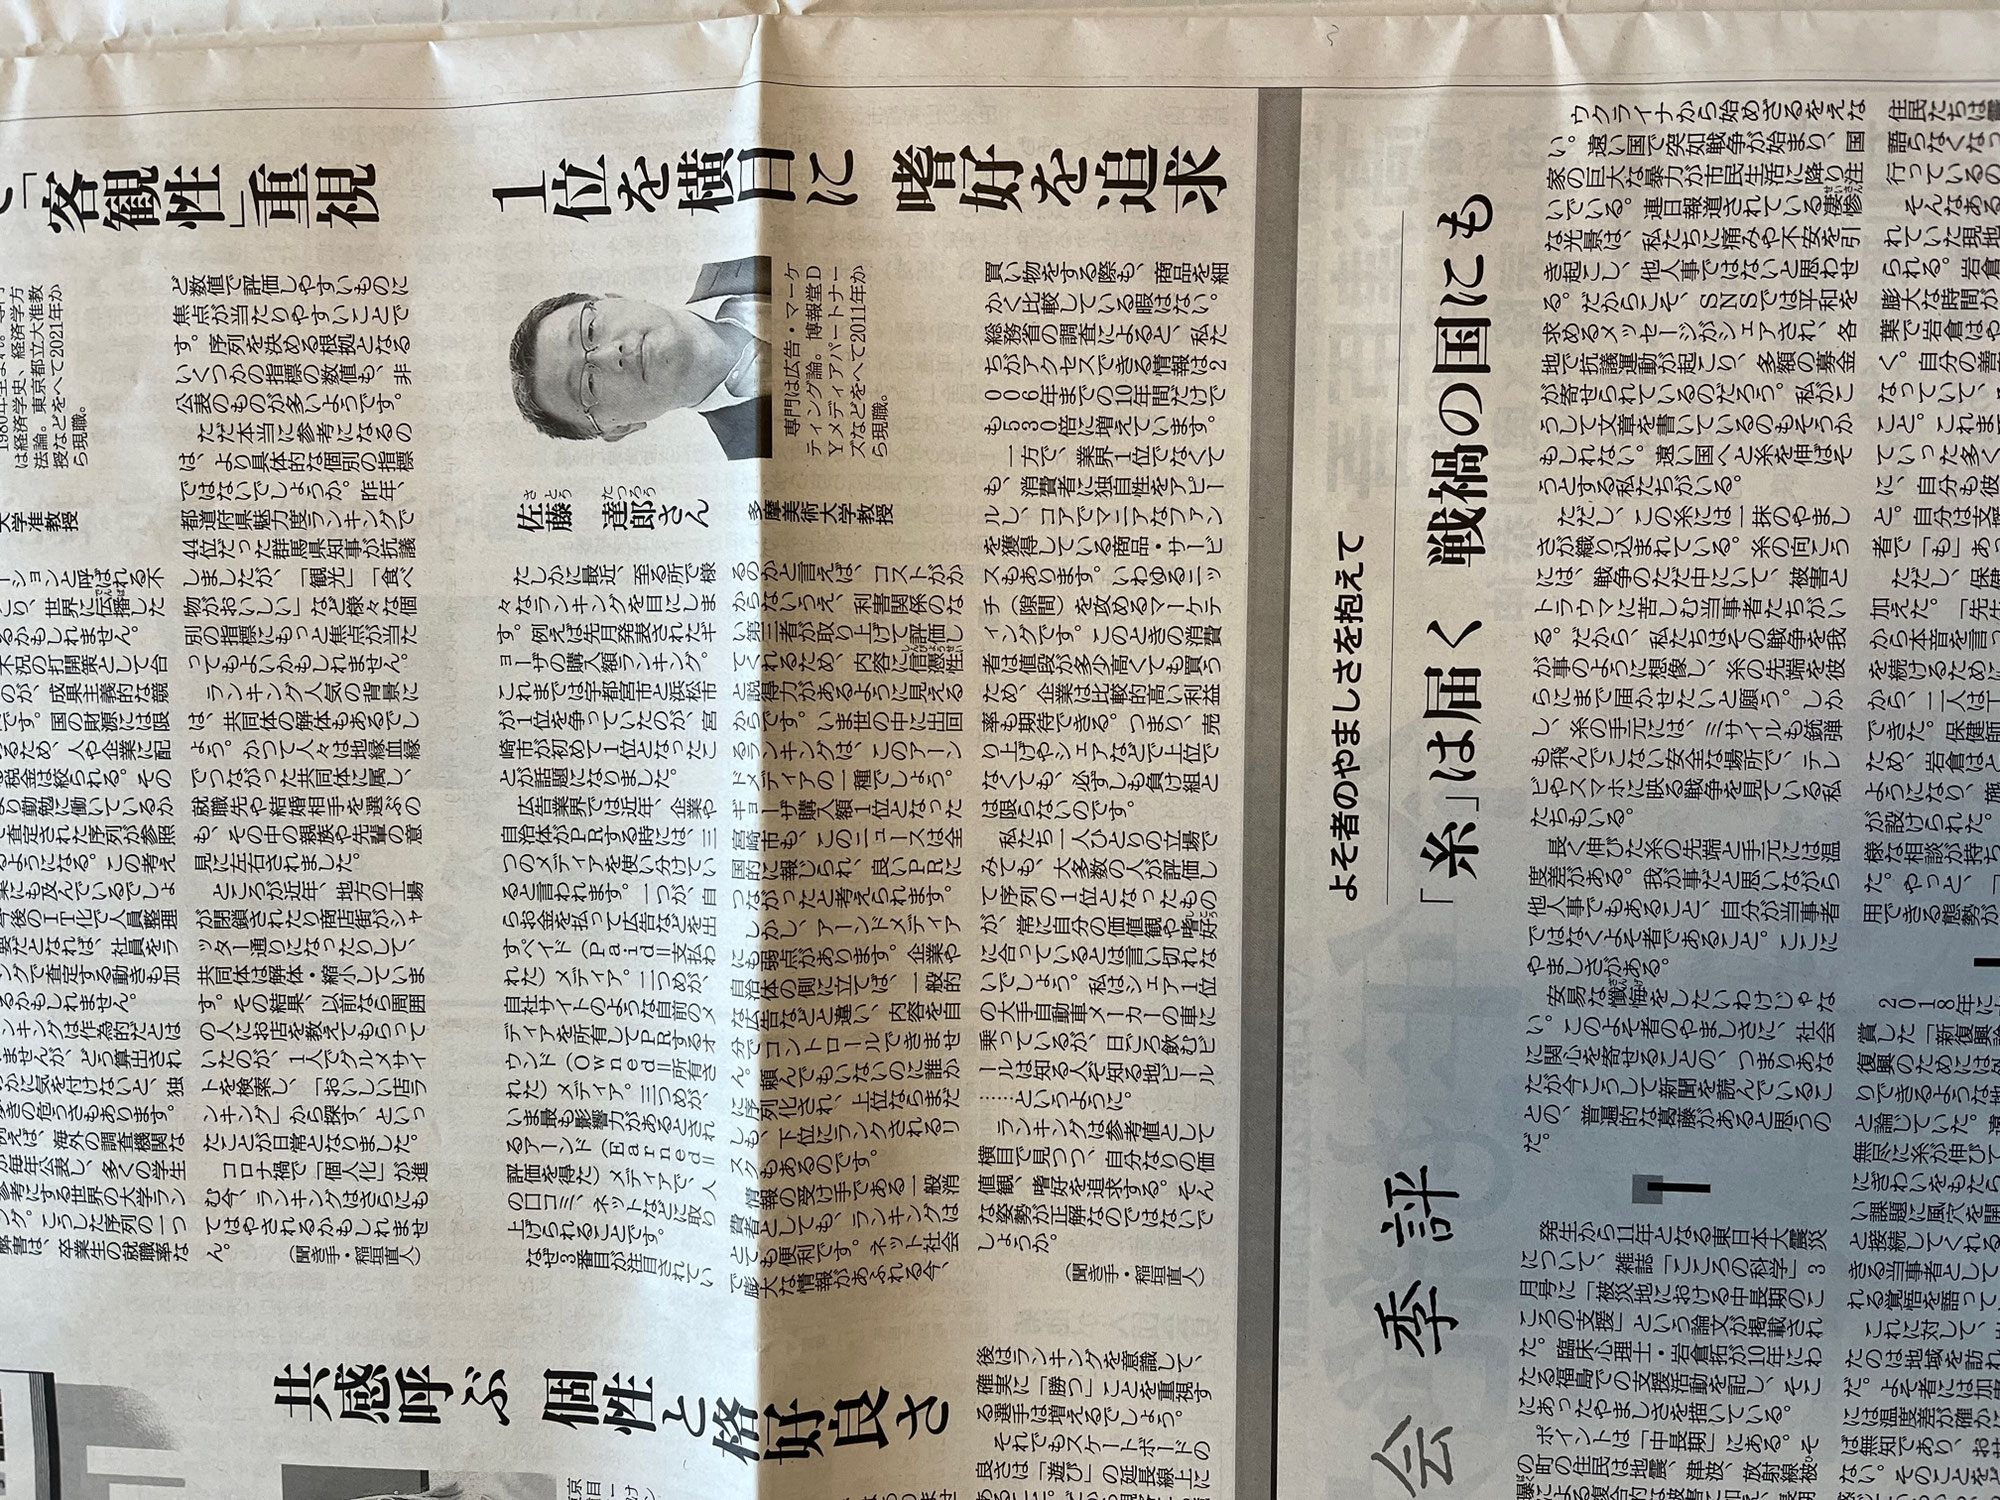 ＜朝日新聞『耕論』欄にインタビュー記事掲載＞　『耕論』というコーナーで“ランキング社会”についてのインタビュー記事が掲載されました